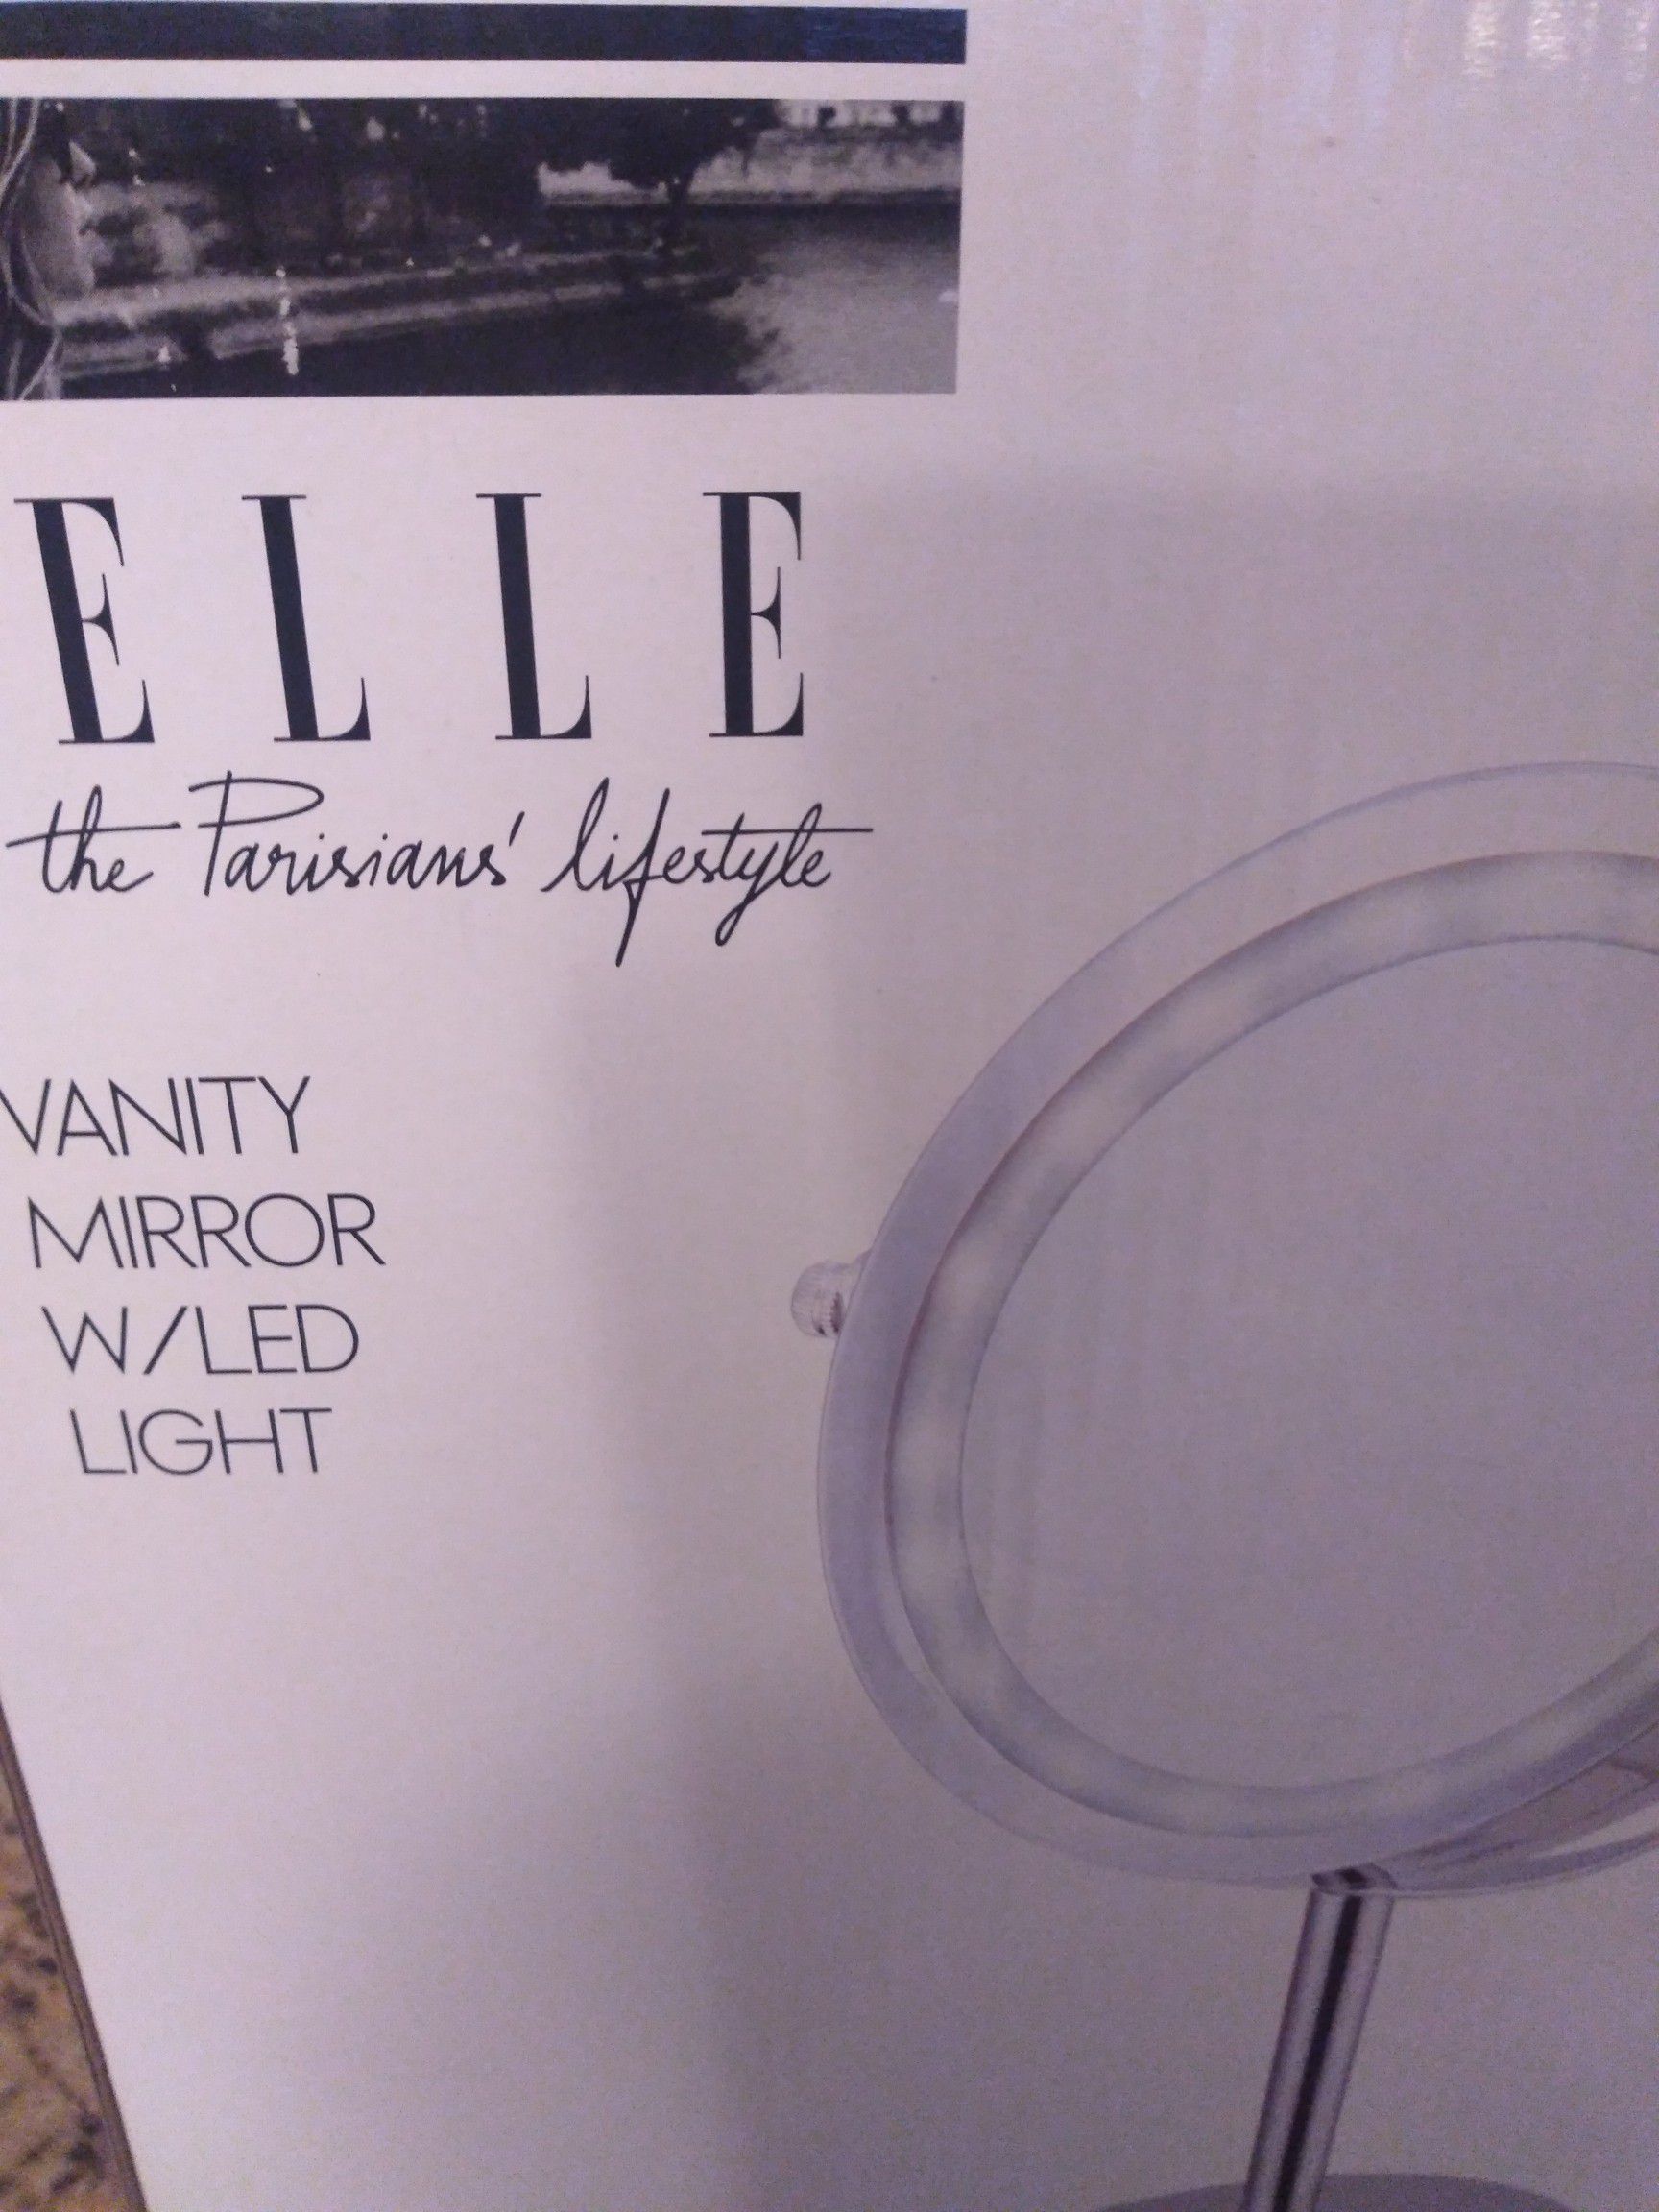 Elle Led lighted vanity mirror